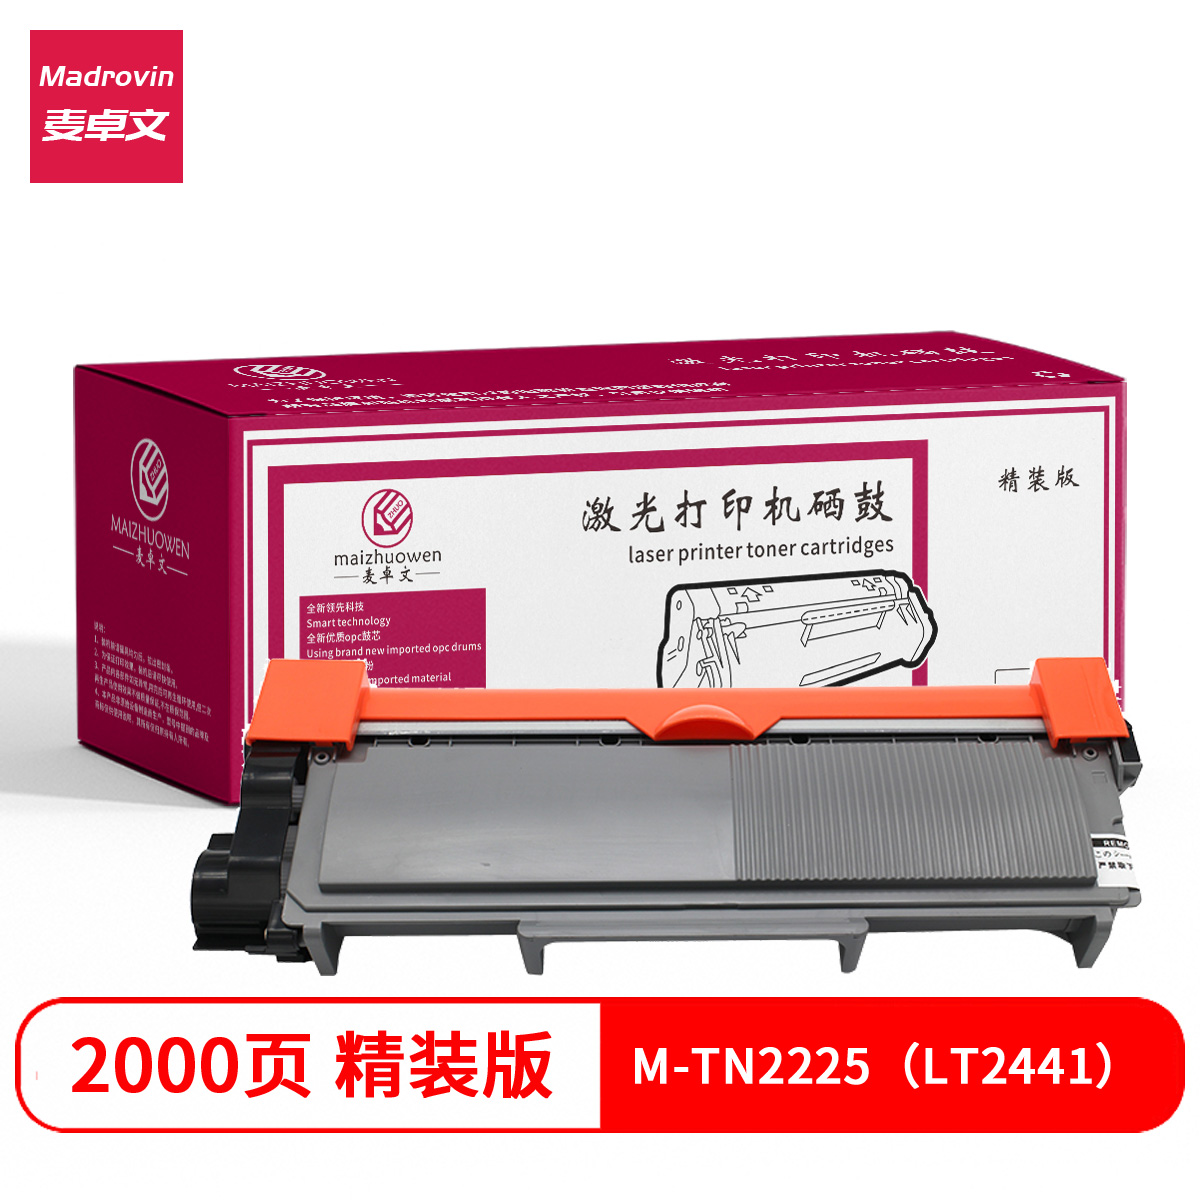 【粉盒】麦卓文M-TN2225(LT2441)粉盒 适用兄弟7360 7057联想2400 M7400